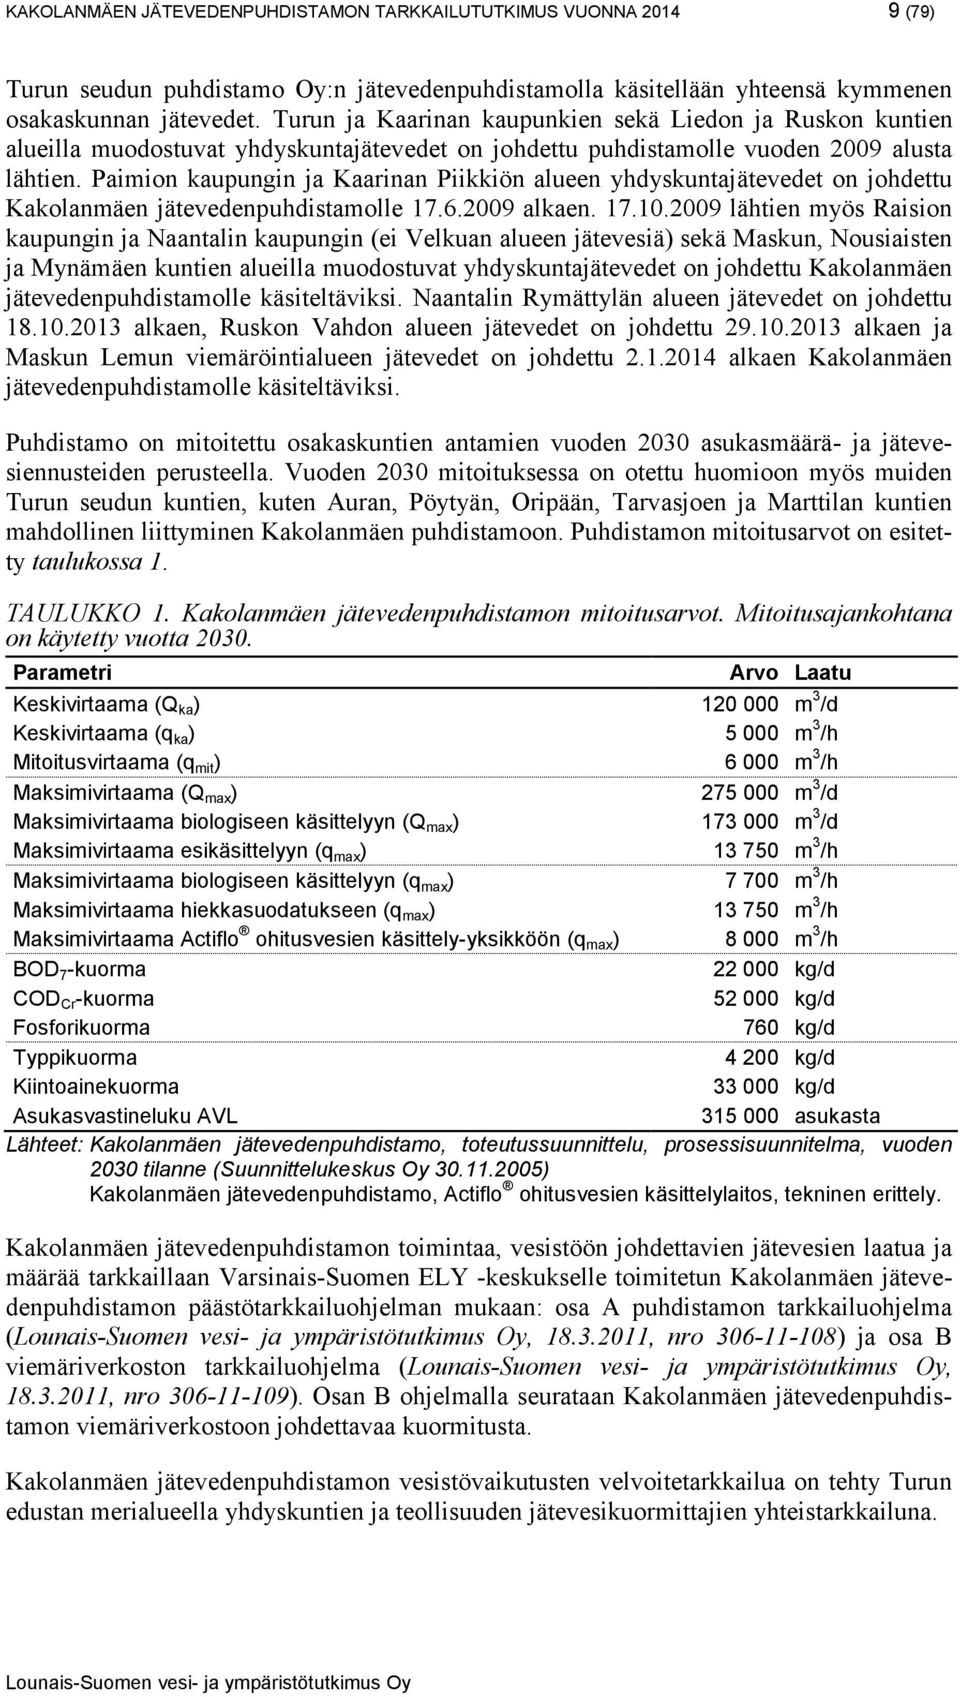 Paimion kaupungin ja Kaarinan Piikkiön alueen yhdyskuntajätevedet on johdettu Kakolanmäen jätevedenpuhdistamolle 17.6.2009 alkaen. 17.10.